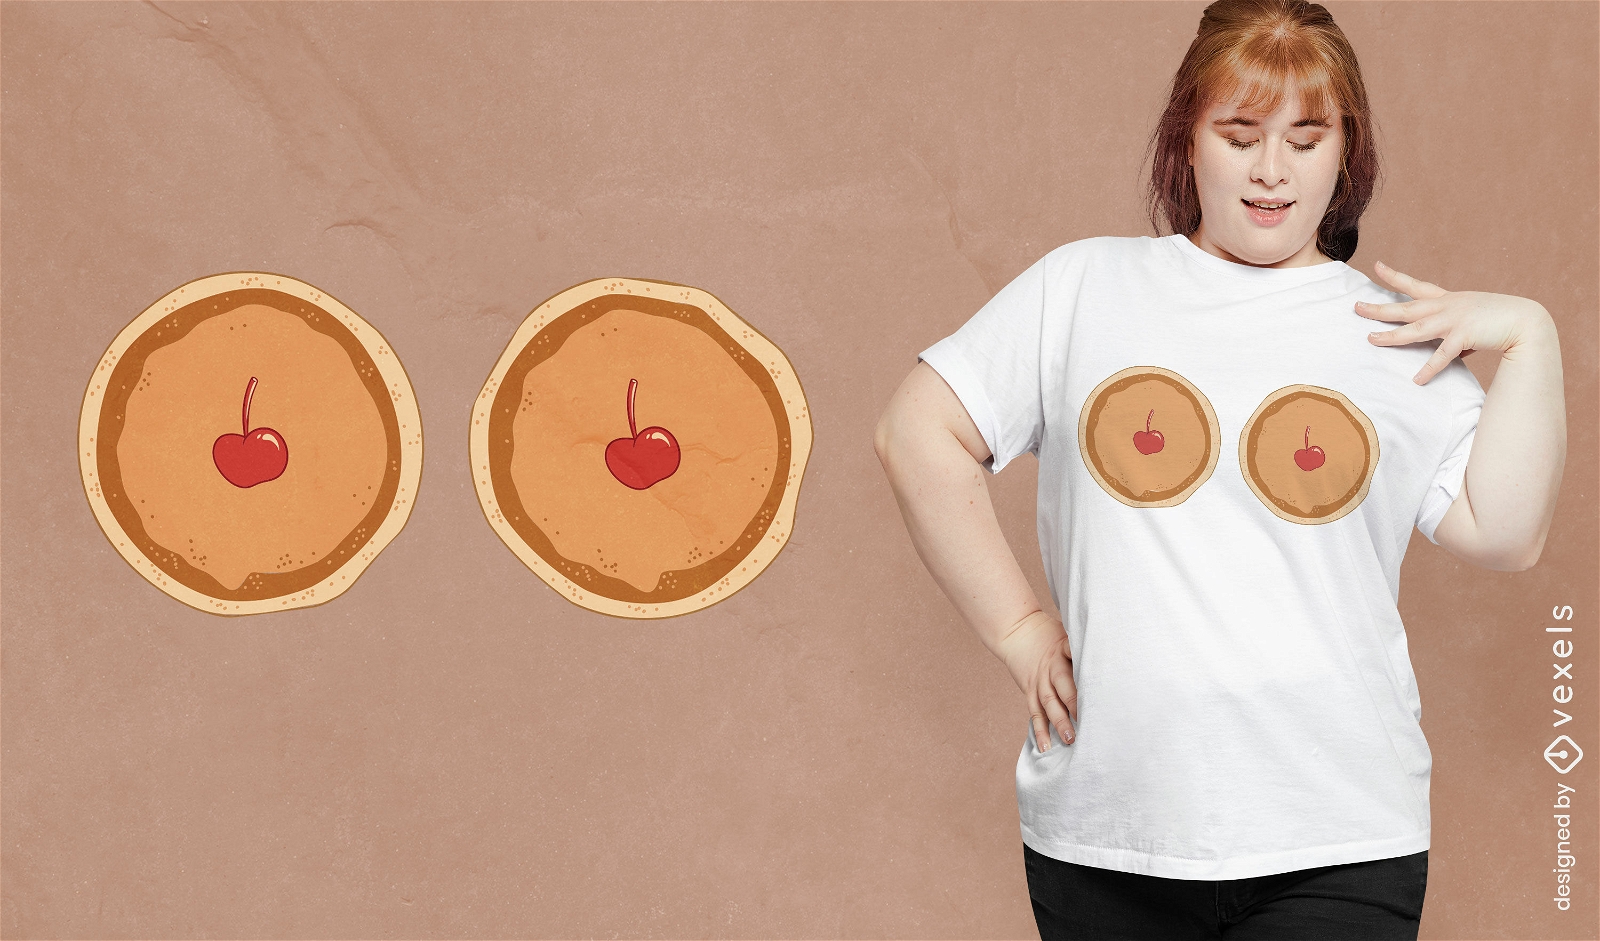 Panquecas com design de camiseta de cerejas